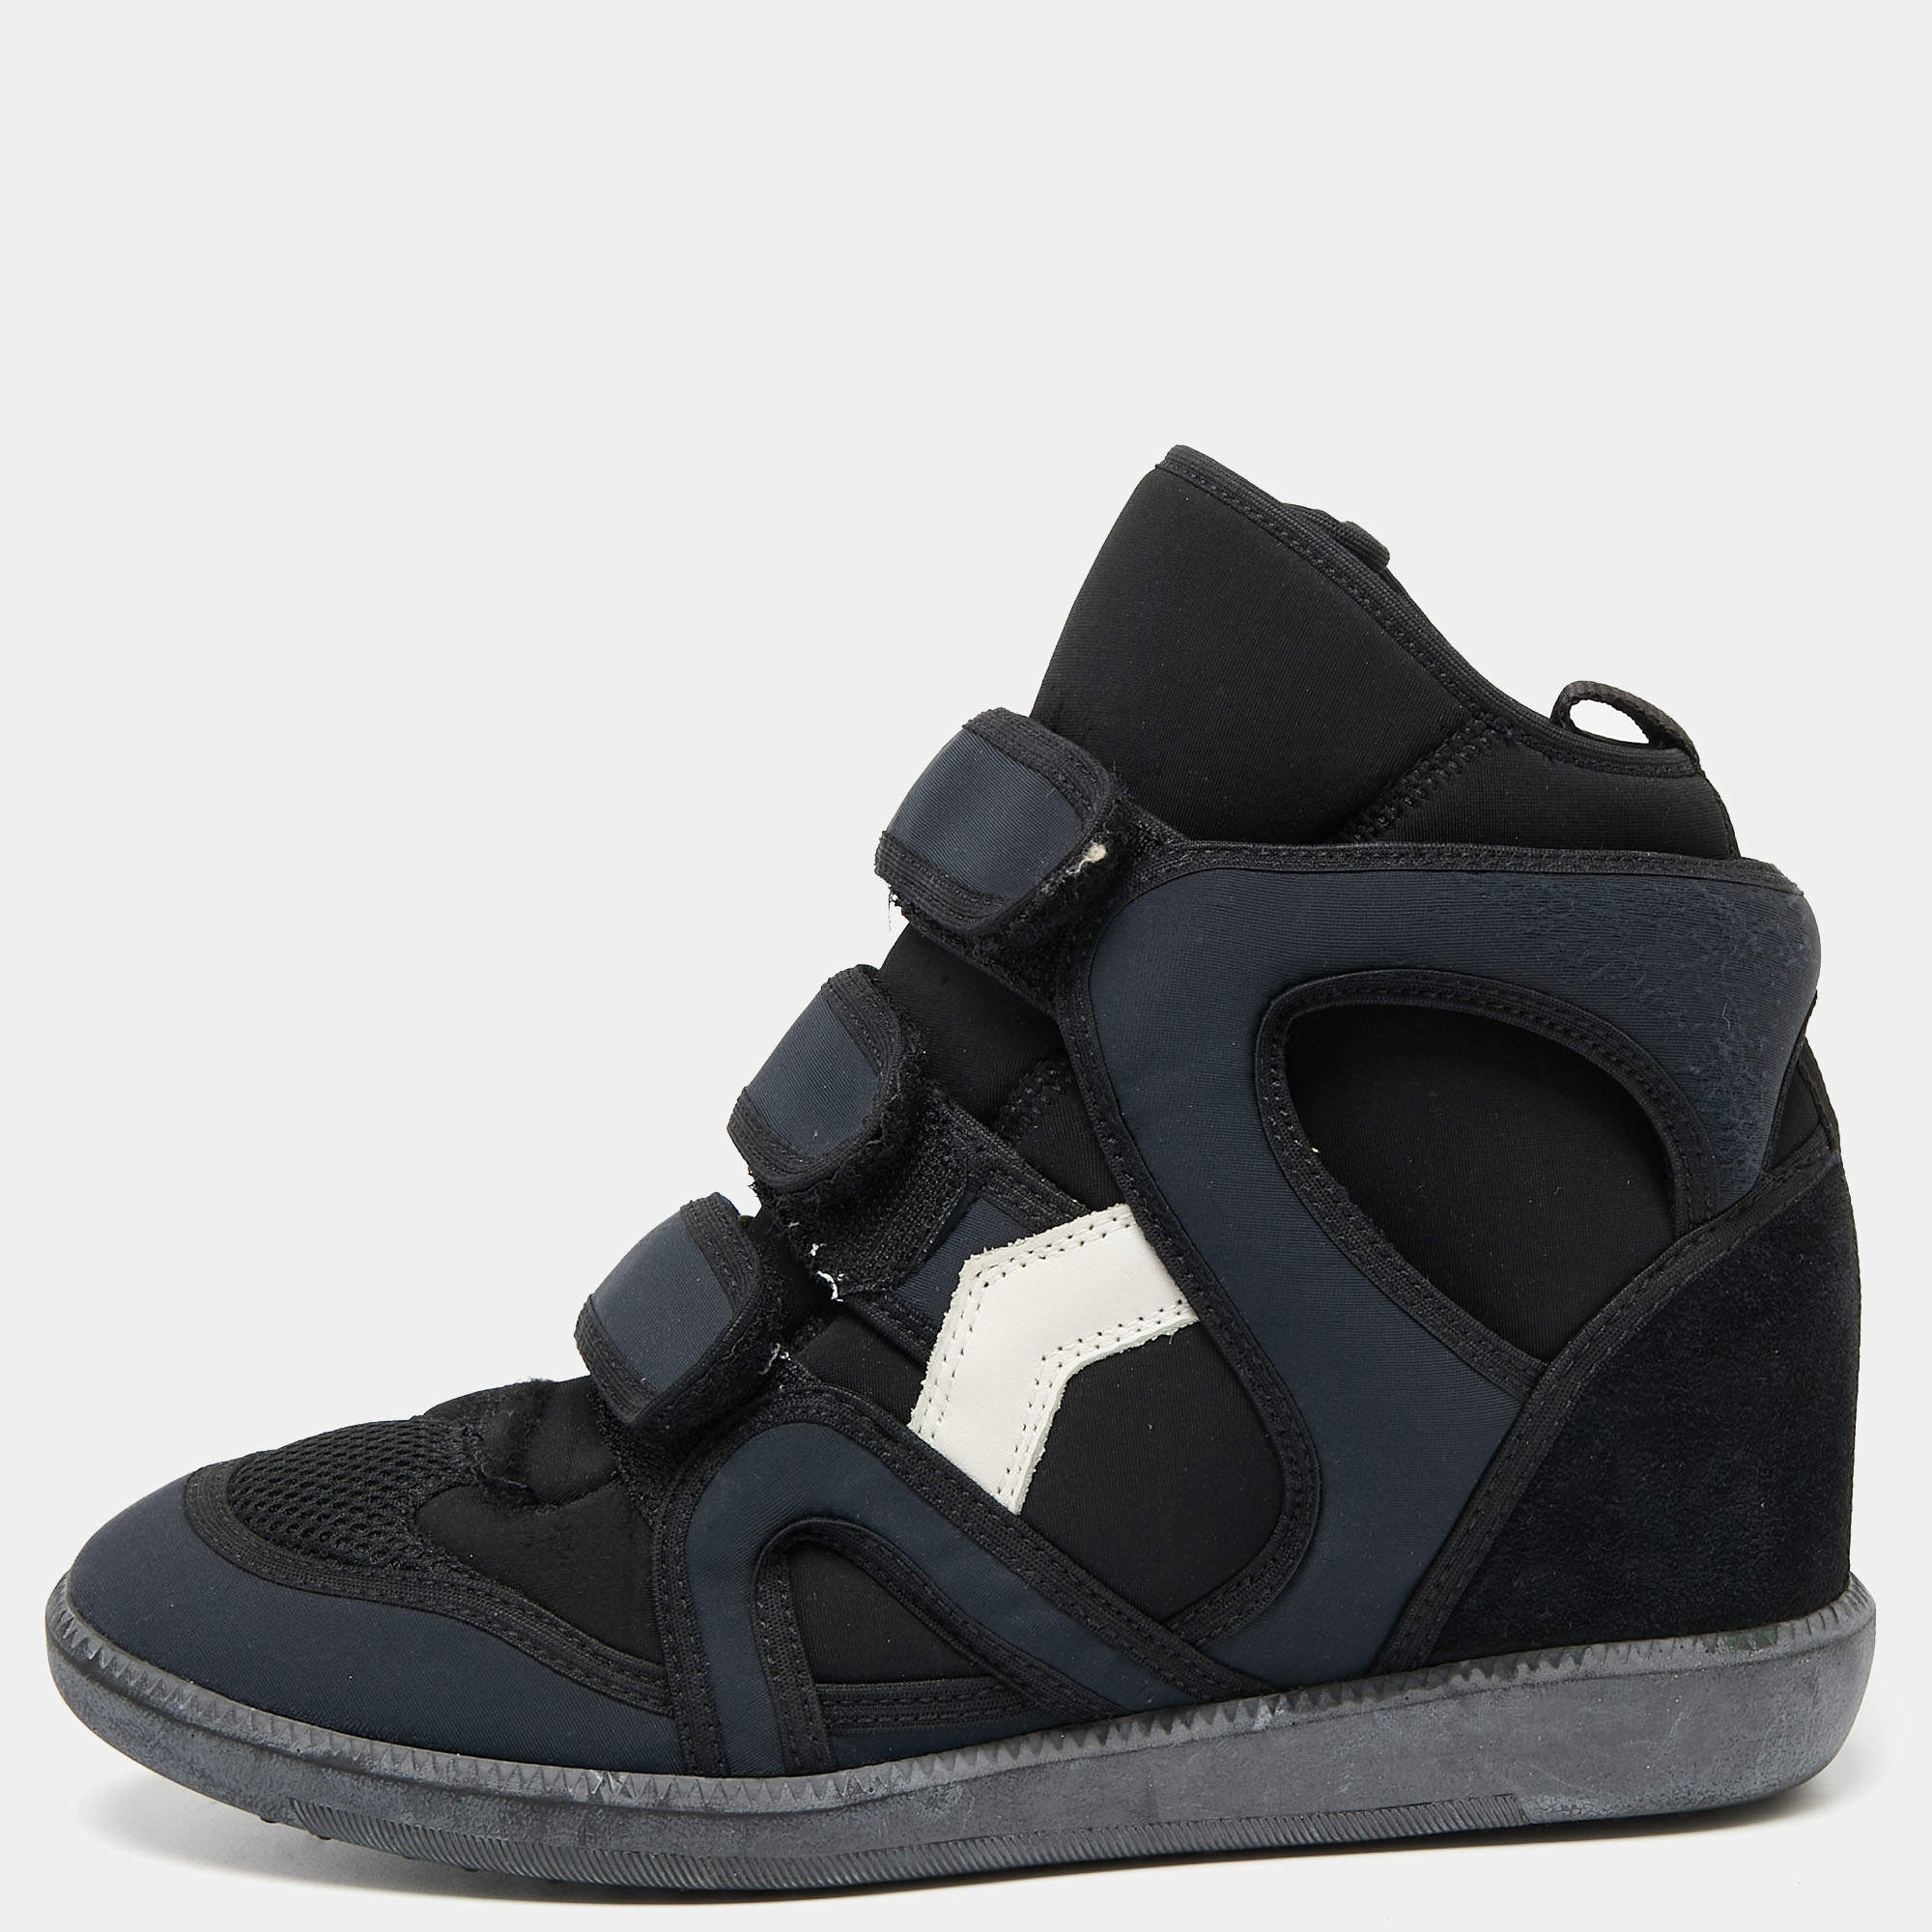 haalbaar verjaardag compact Isabel Marant Black/Navy Blue Suede And Nylon High Top Wedge Sneakers Size  38 Isabel Marant | TLC